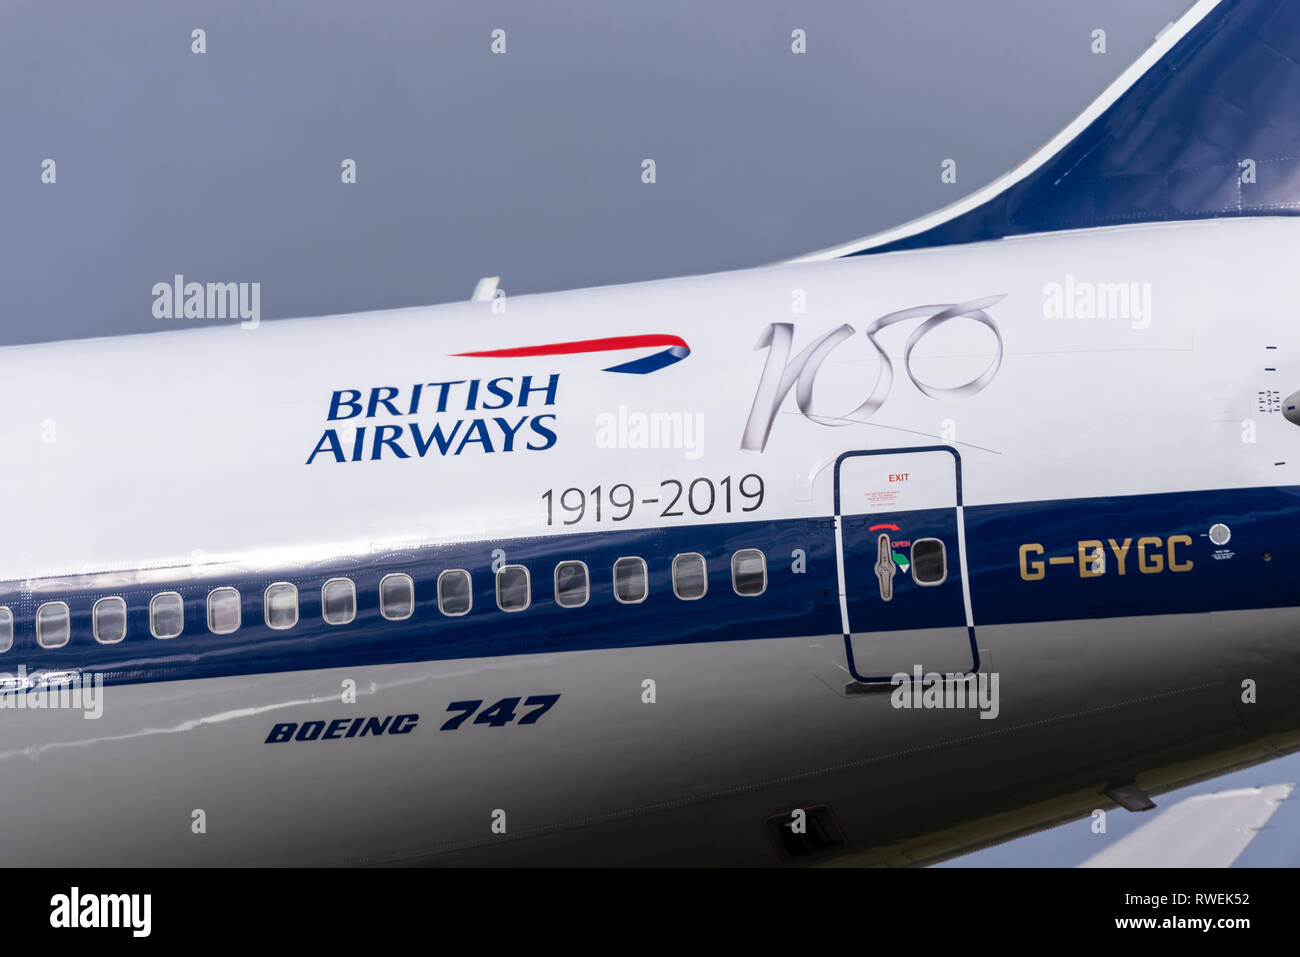 Schema di verniciatura centenario BOAC British Airways Boeing 747 Jumbo Jet aereo di linea atterraggio all'aeroporto di Londra Heathrow, Regno Unito Foto Stock